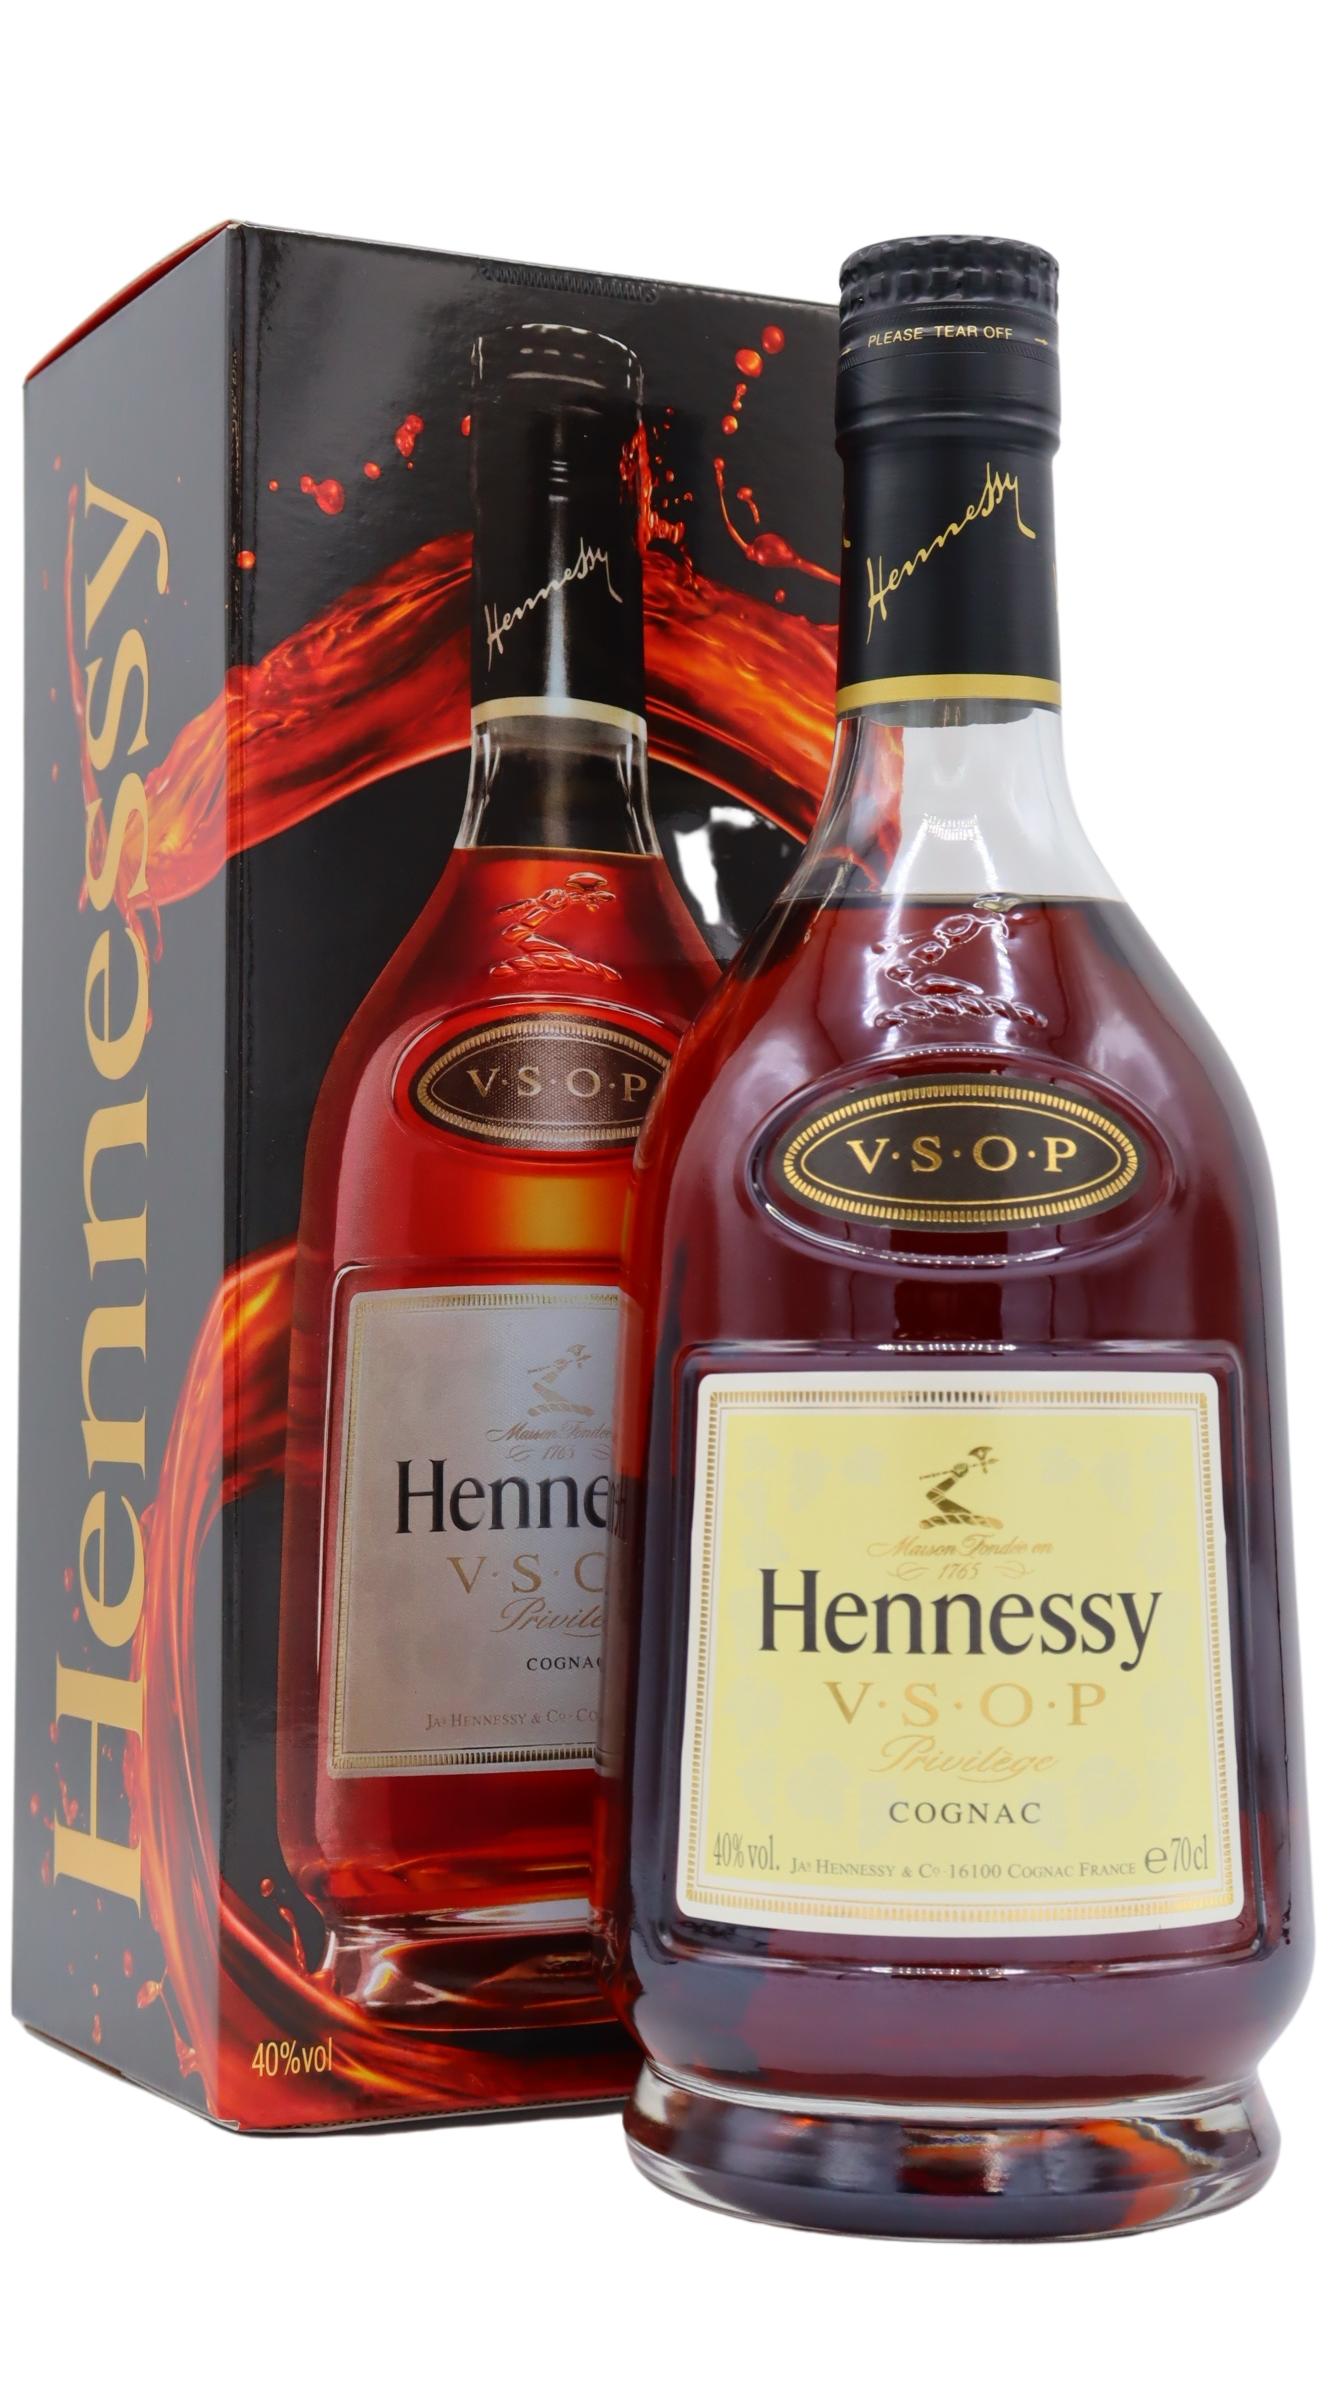 Hennessy Privilege VSOP Cognac (Engraved Bottle)